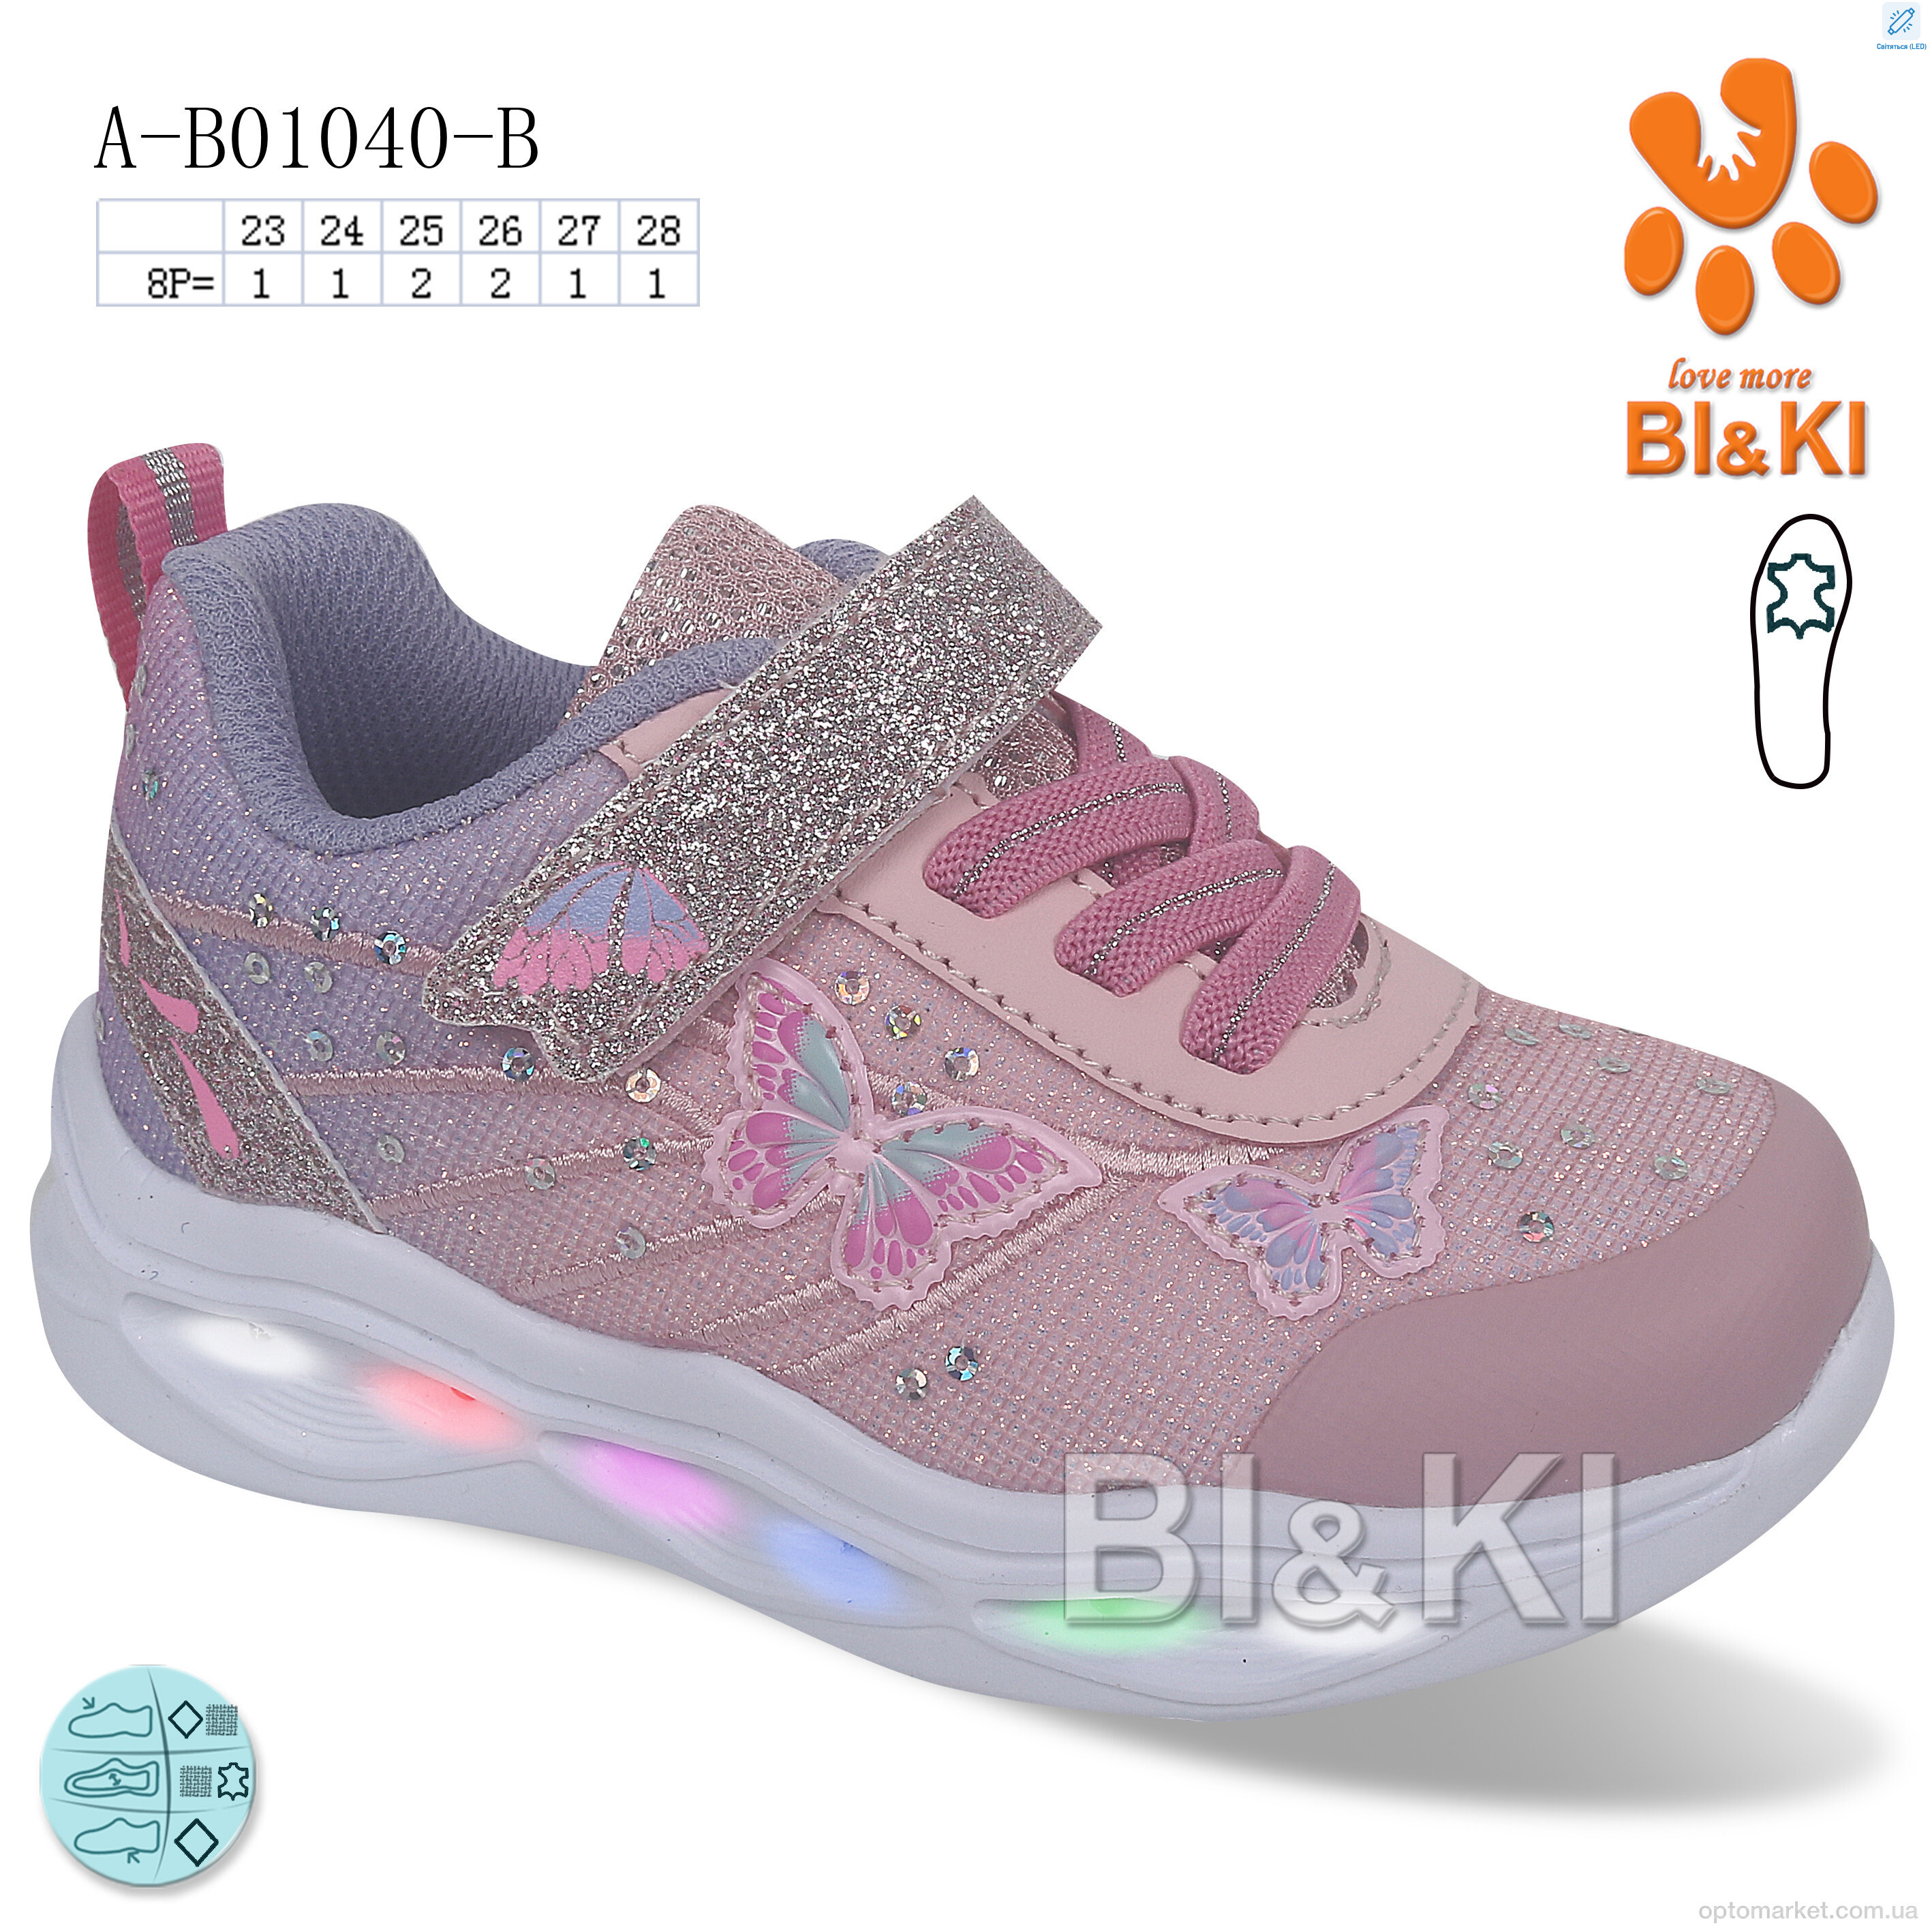 Купить Кросівки дитячі A-B01040-B BL&KL рожевий, фото 1